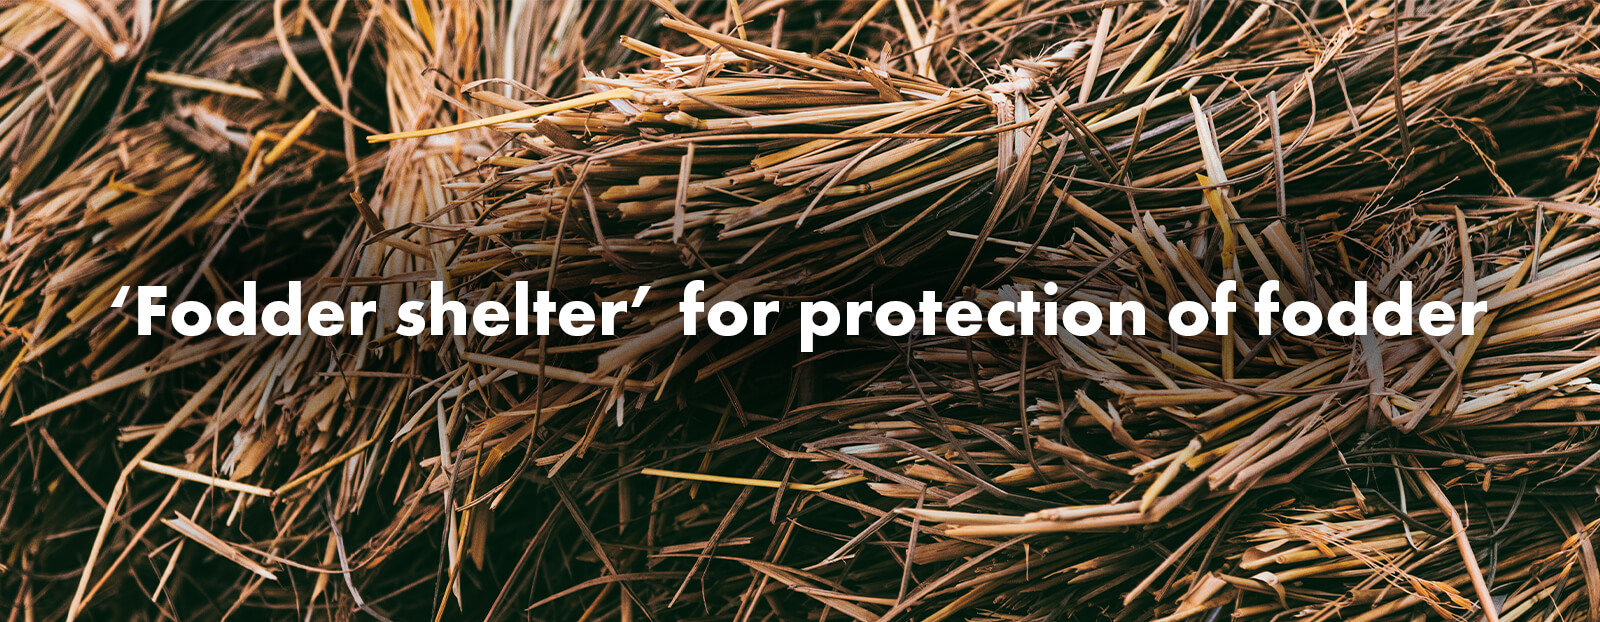 ‘Fodder shelter’ for protection of fodder